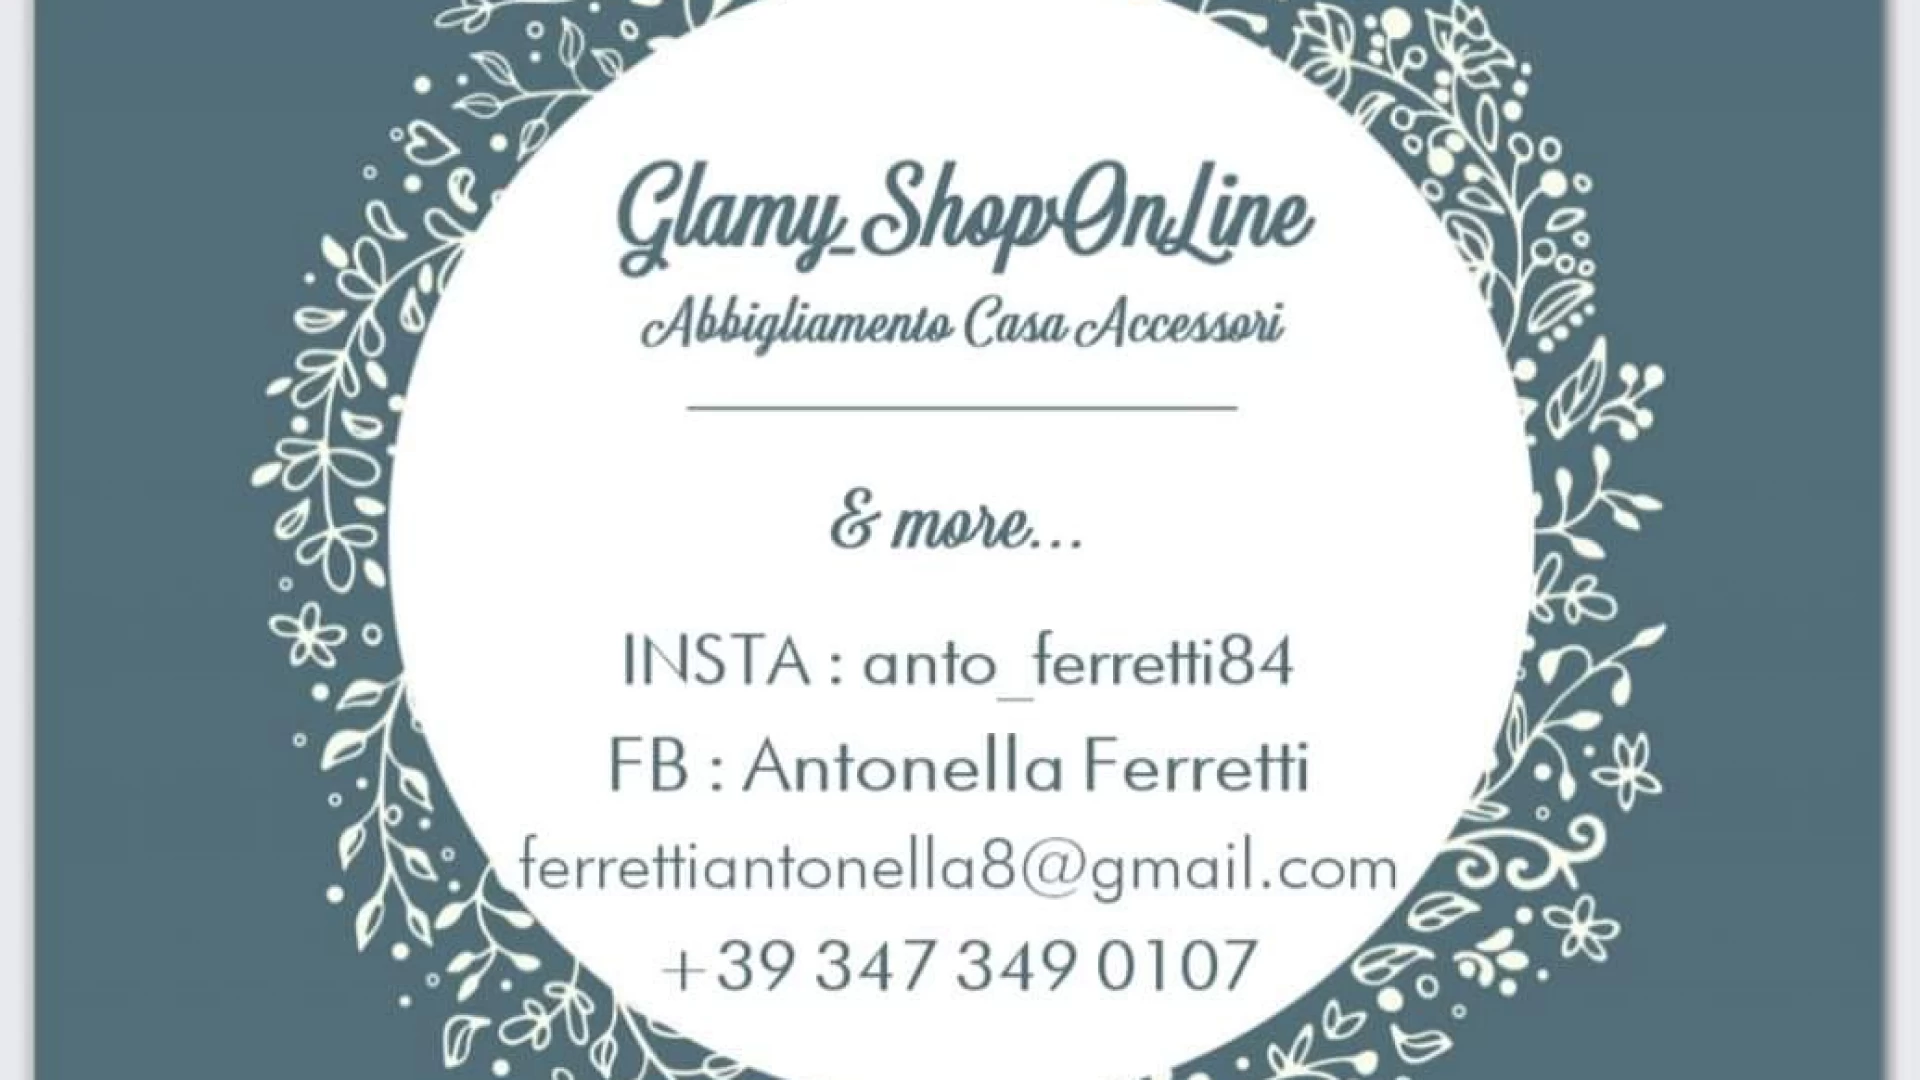 Isernia: Antonella Ferretti rivoluziona lo shopping on-line. Glamy Shop, un nuovo modo di concepire il mercato.